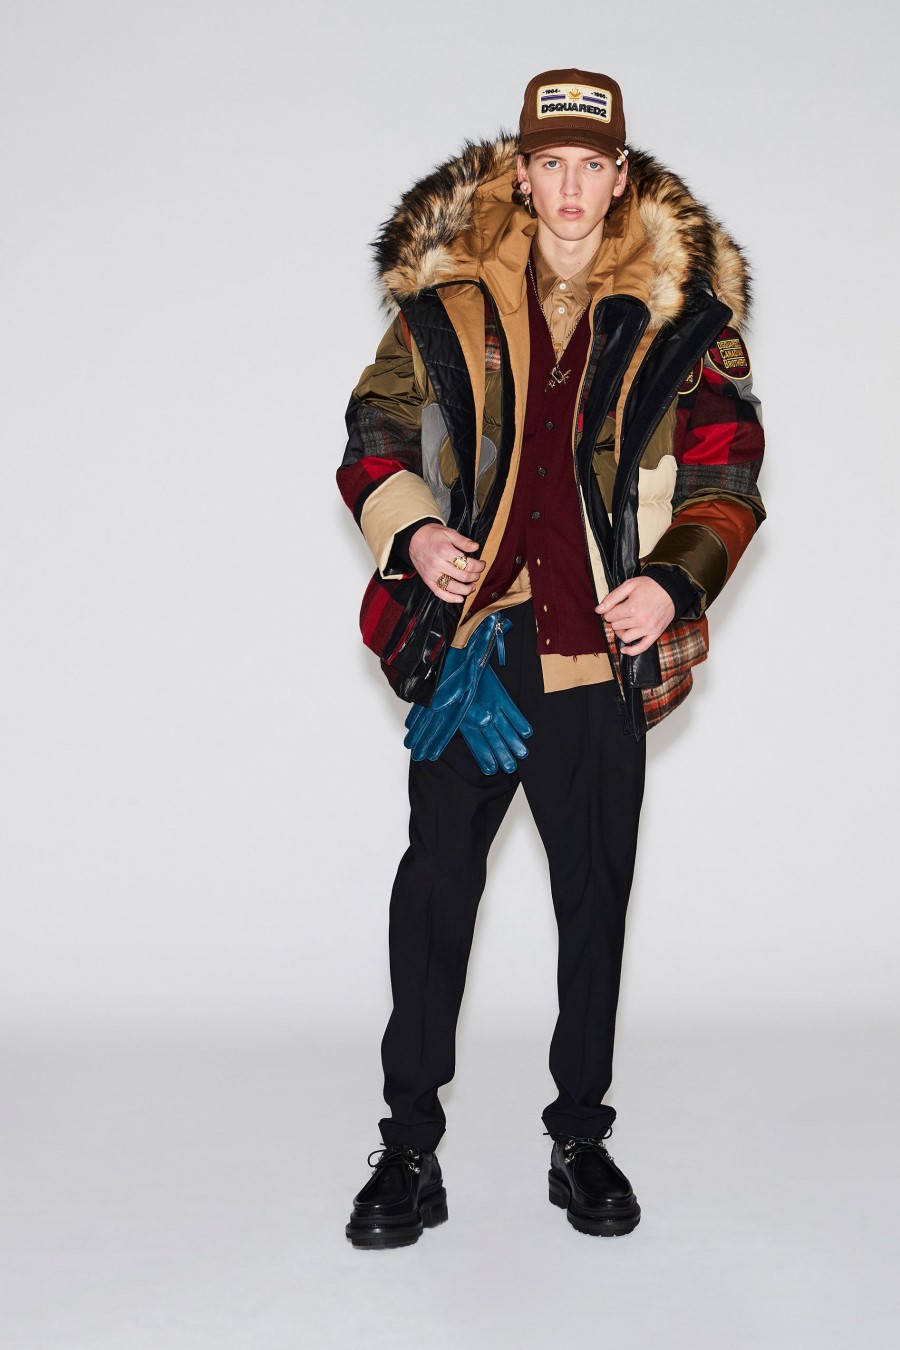 Dsquared2 Men's Fall Winter 2021 - Milan Fashion Week